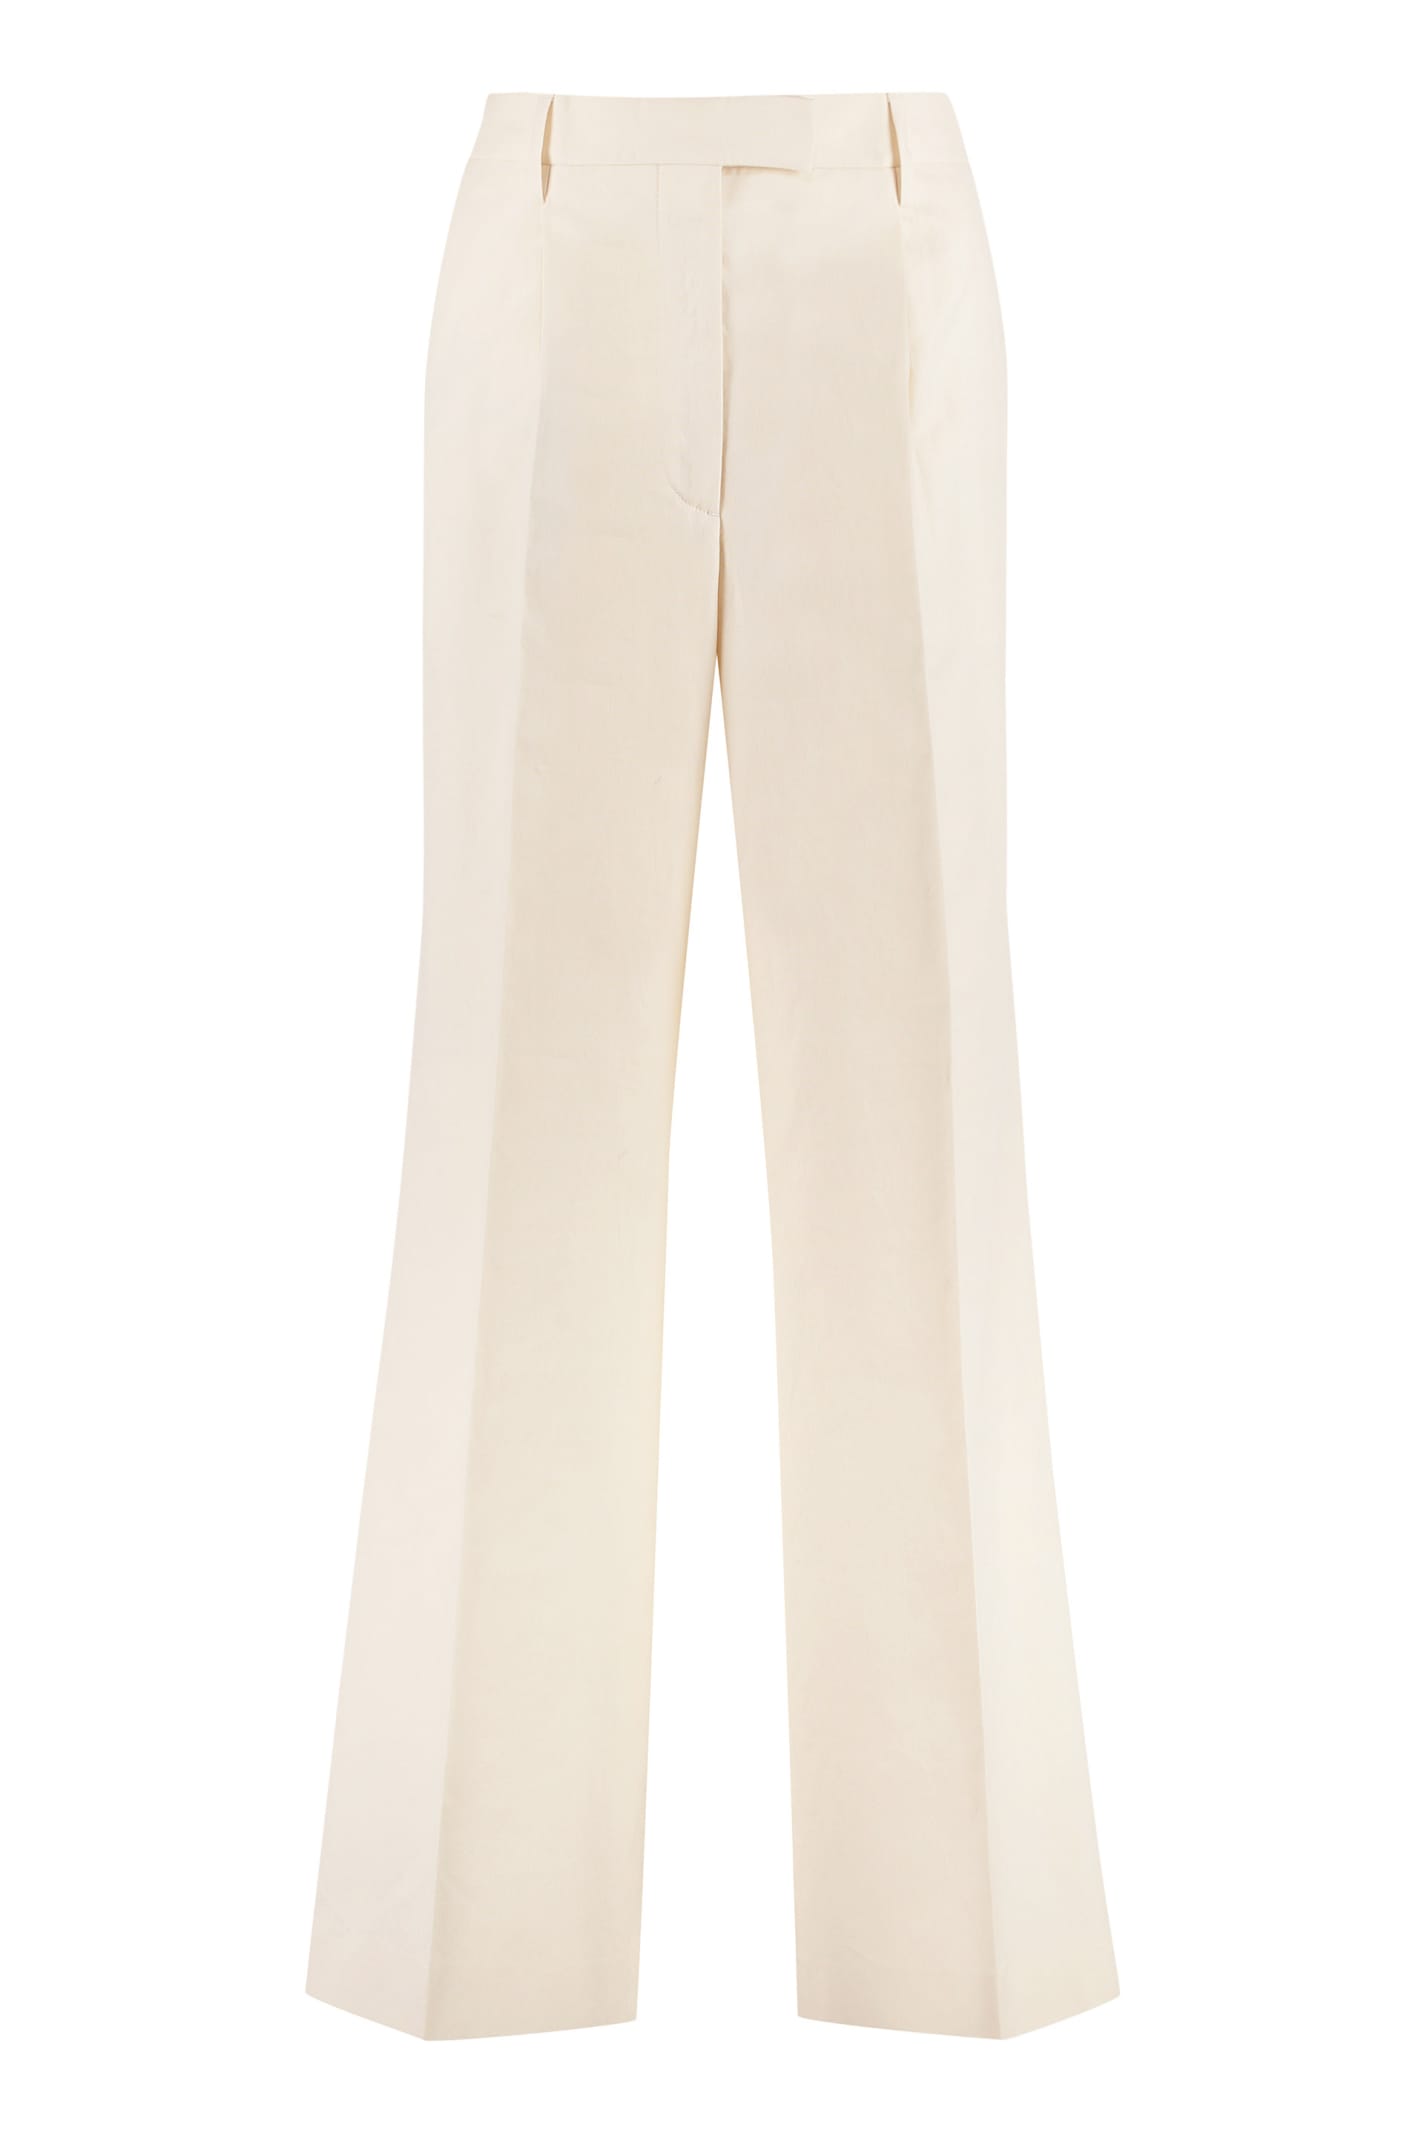 Prada High-rise Cotton Trousers